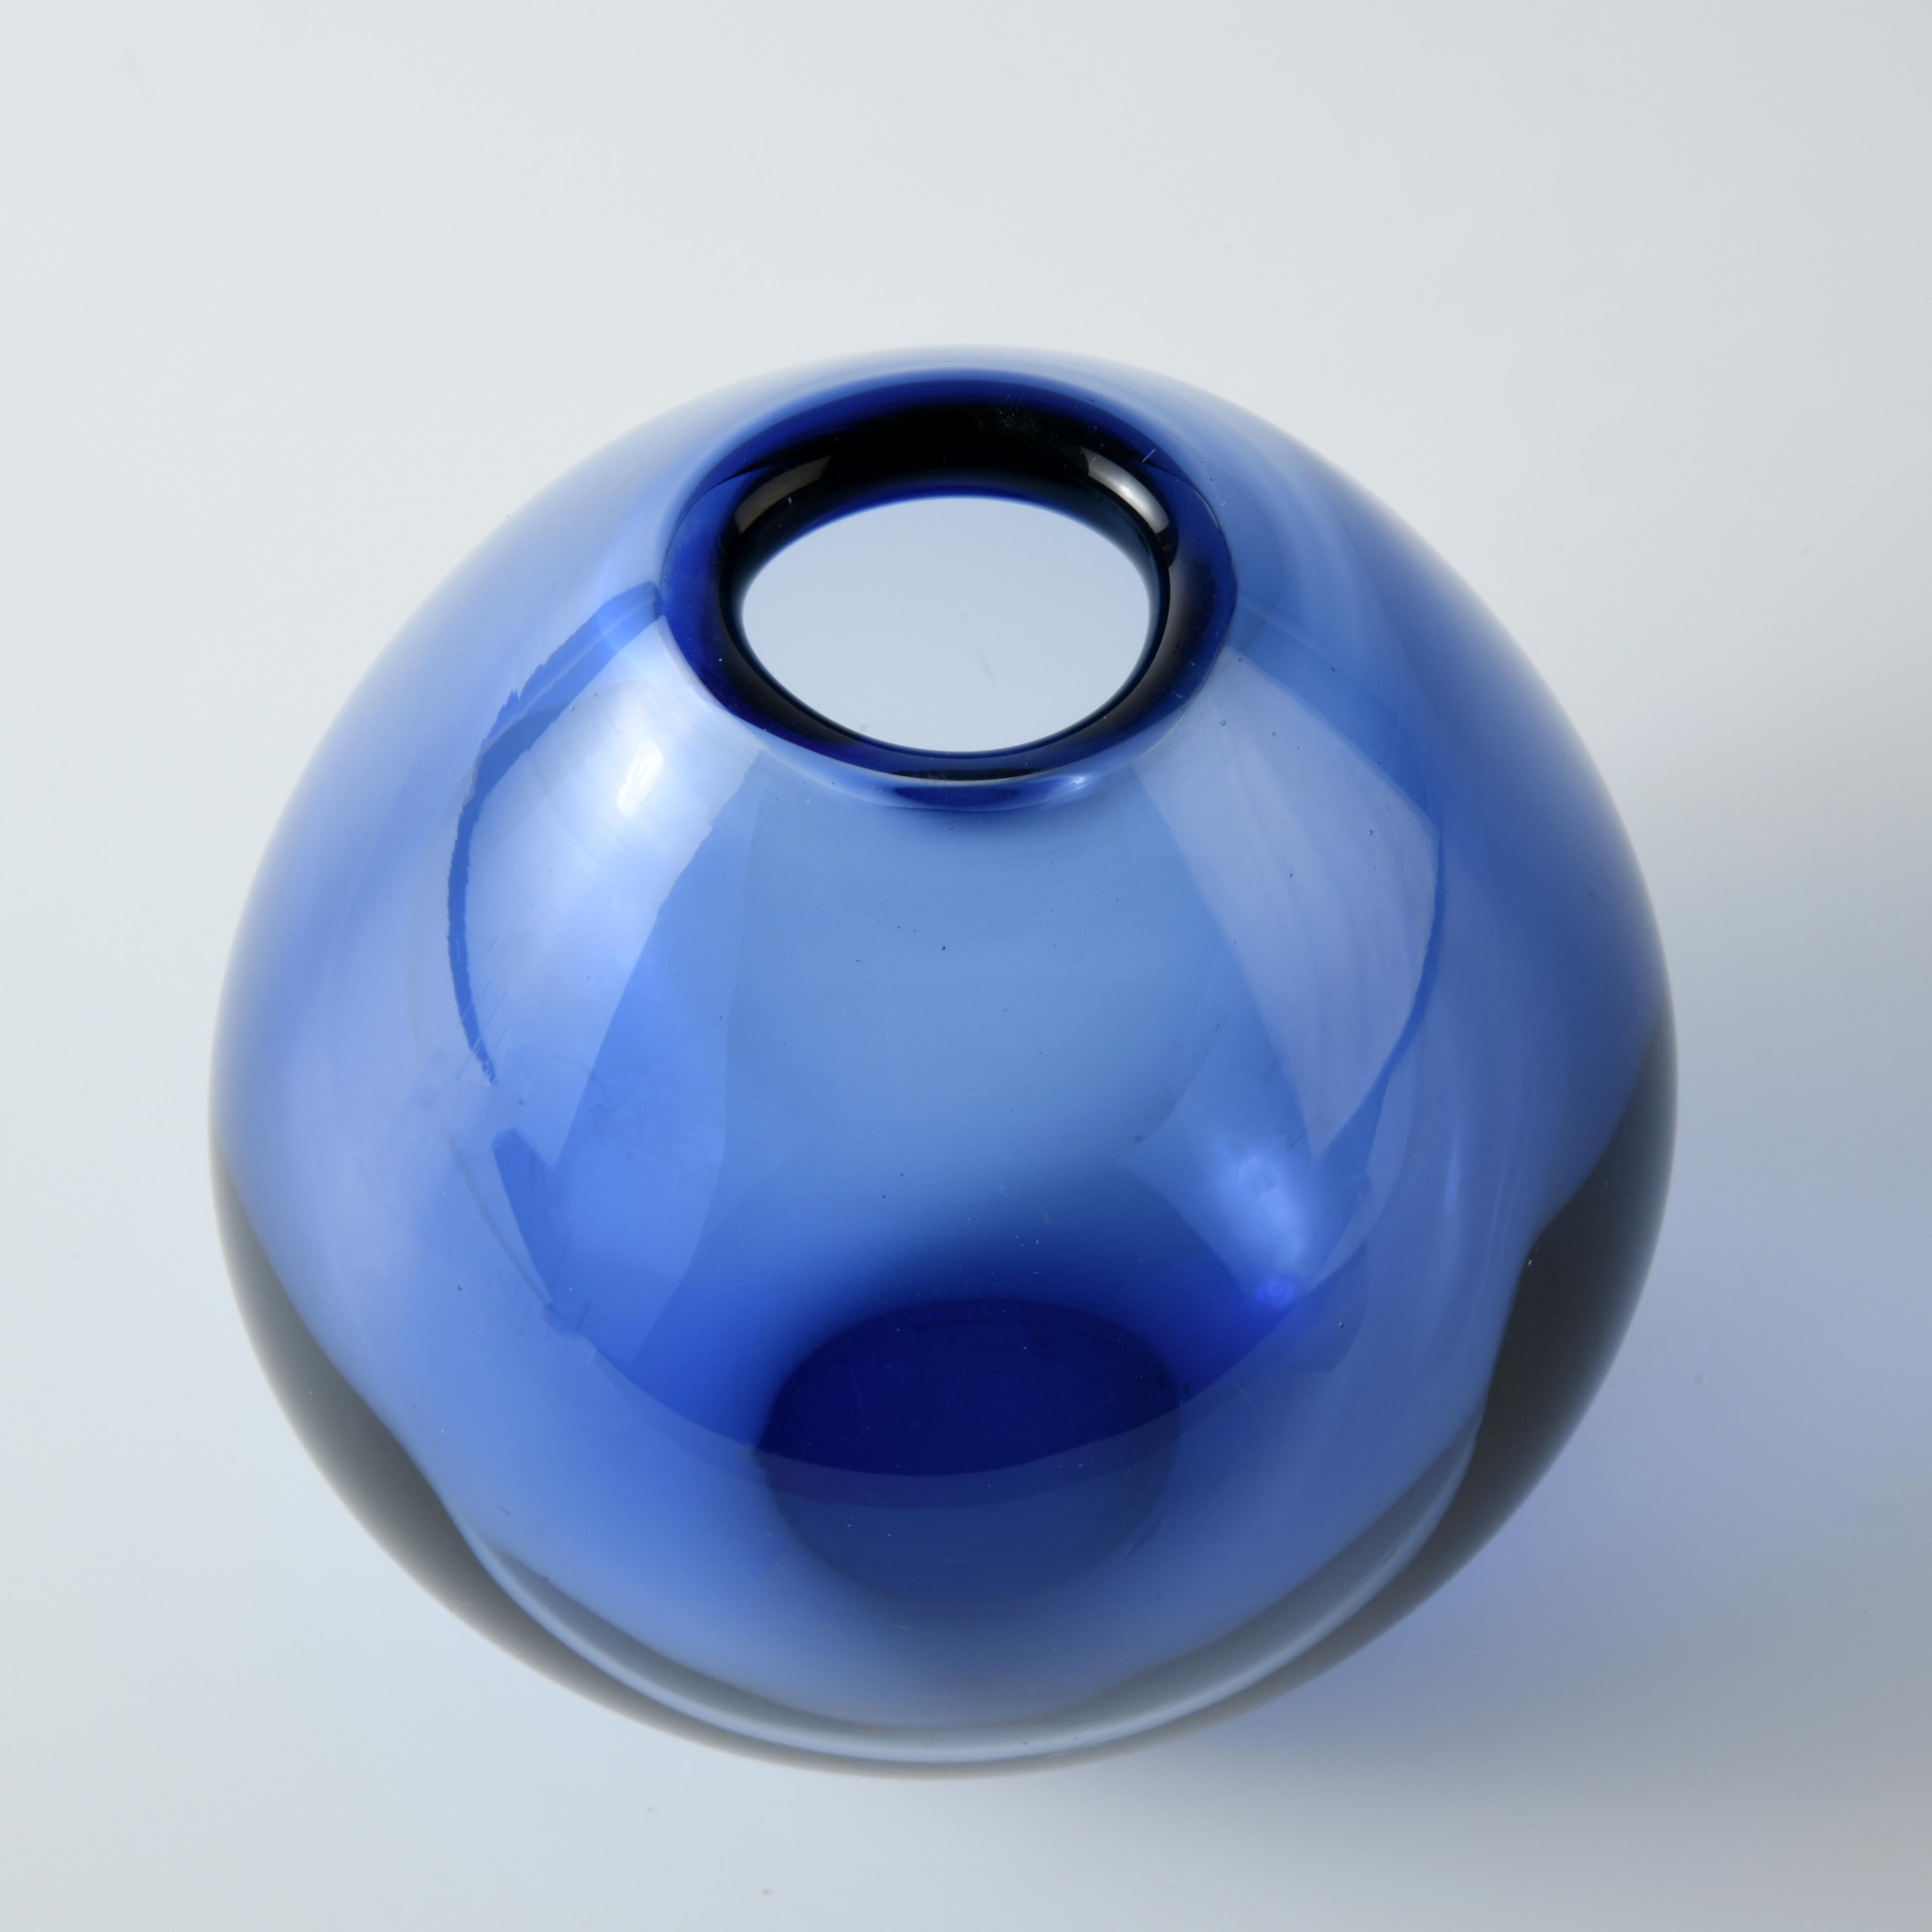 Mid-20th Century Vintage Danish Blue Glass Drop Vase by Per Lutken for Holmegaard For Sale